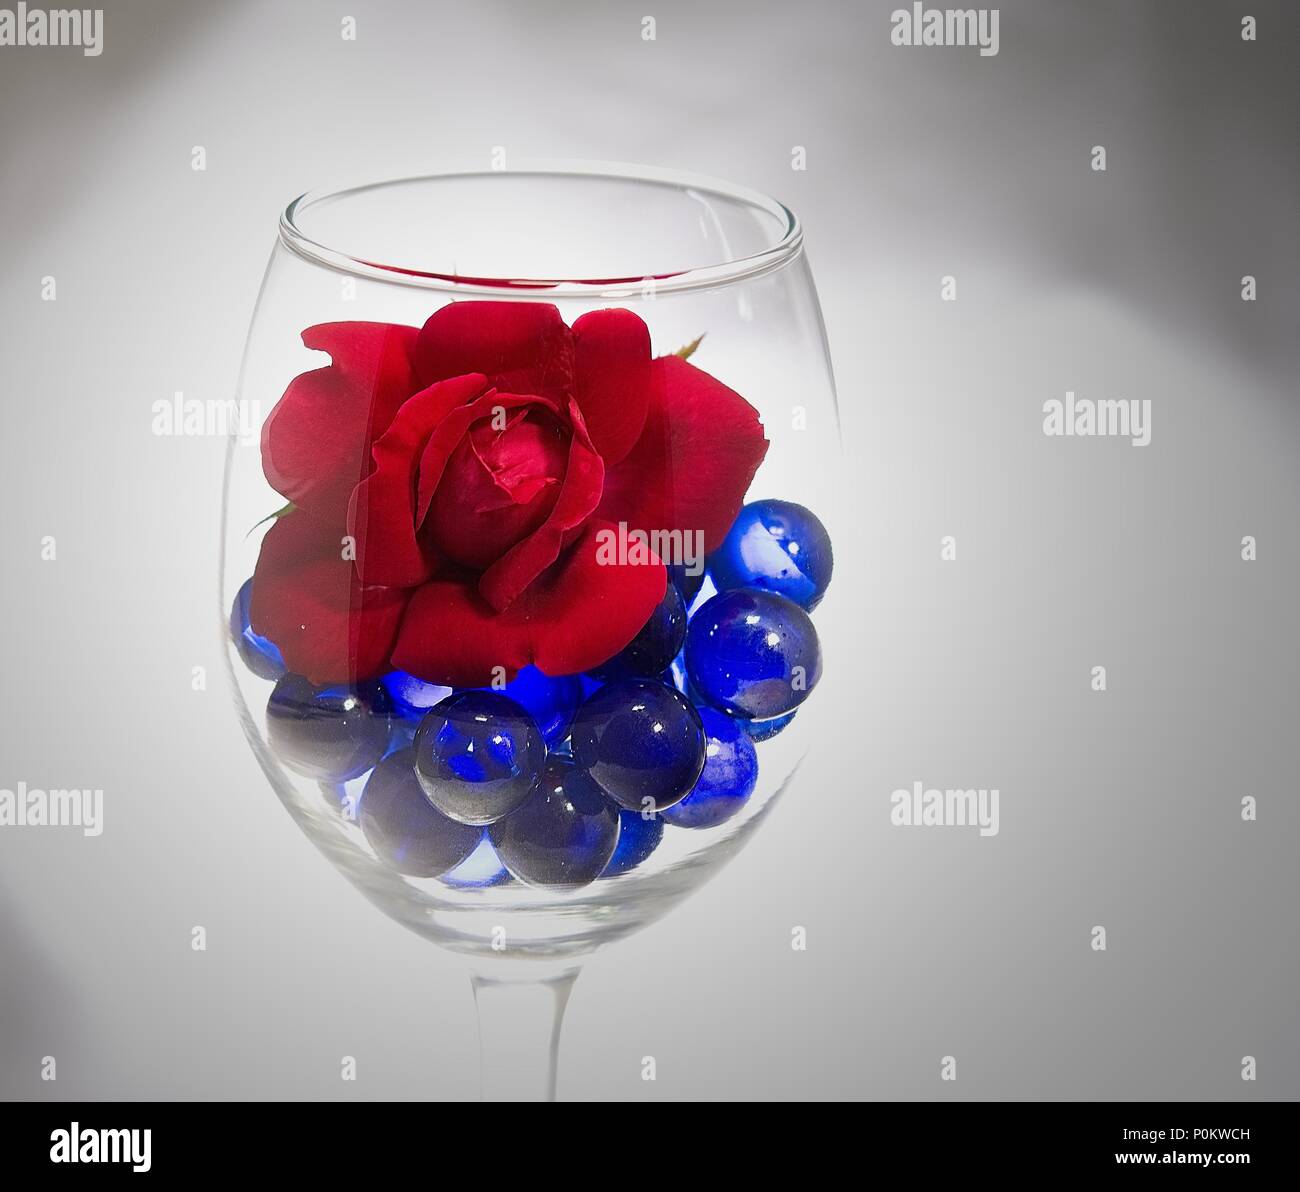 Rose rouge sur un lit de pierres précieuses dans un verre bleu Banque D'Images